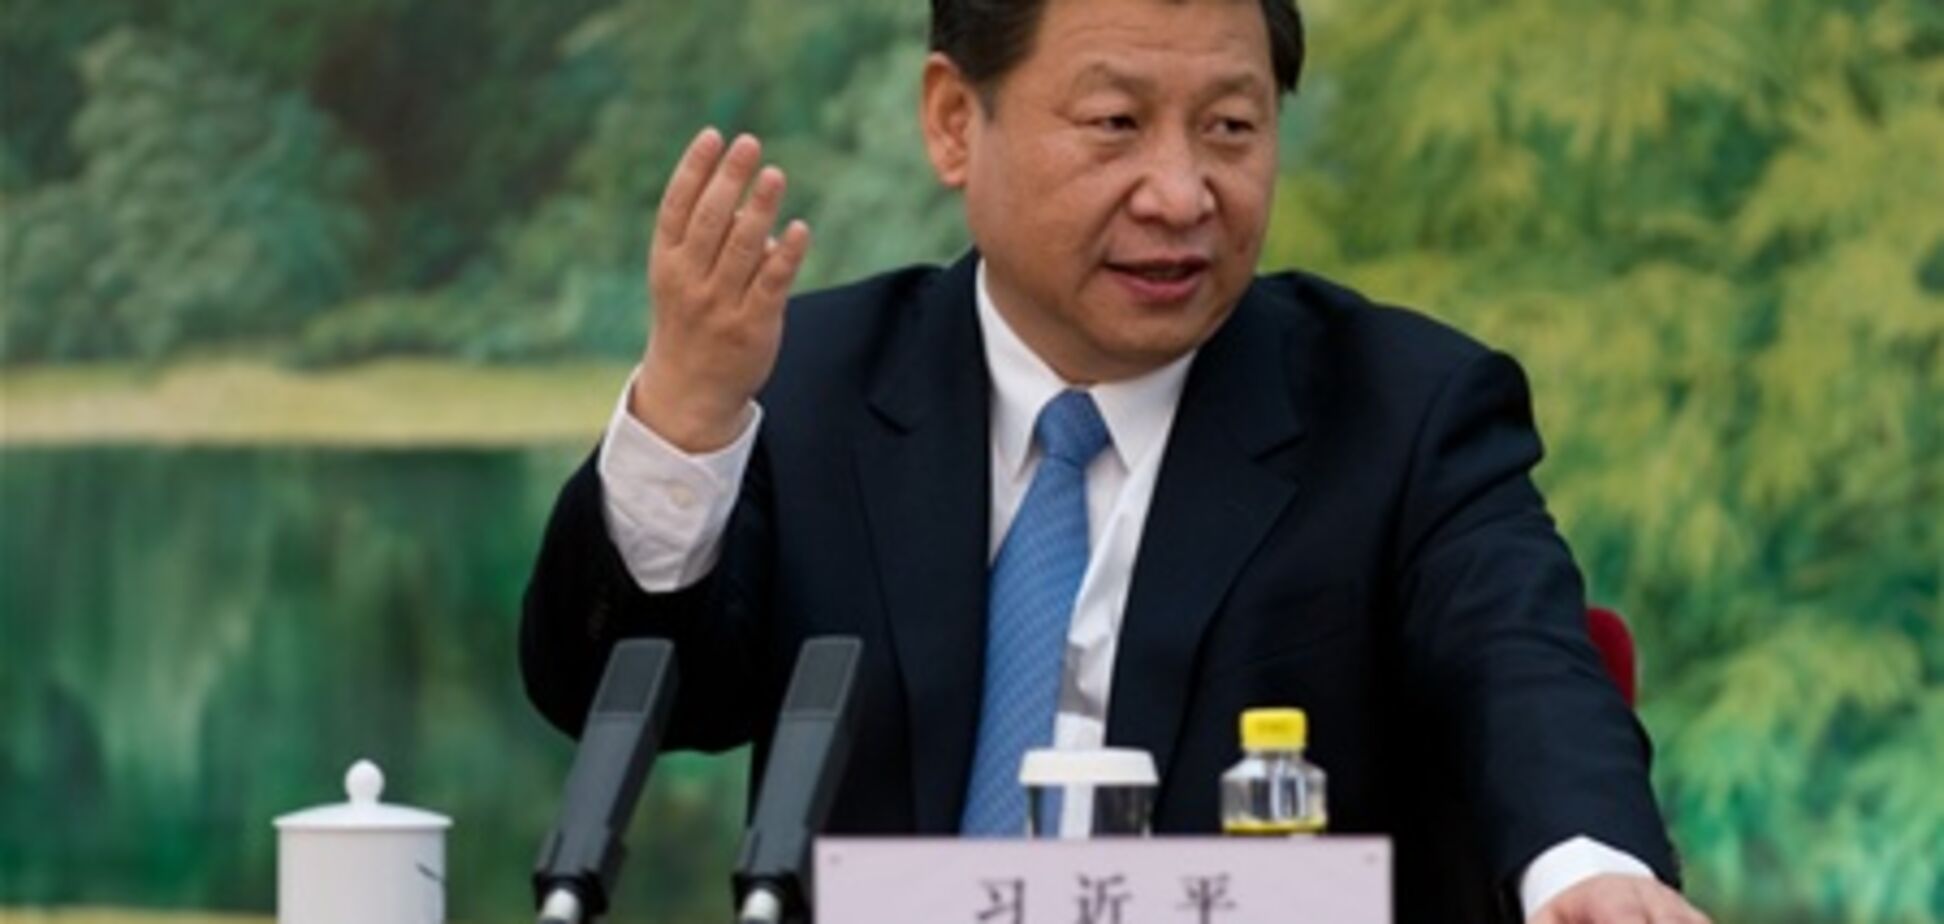 Си Цзиньпин избран председателем КНР